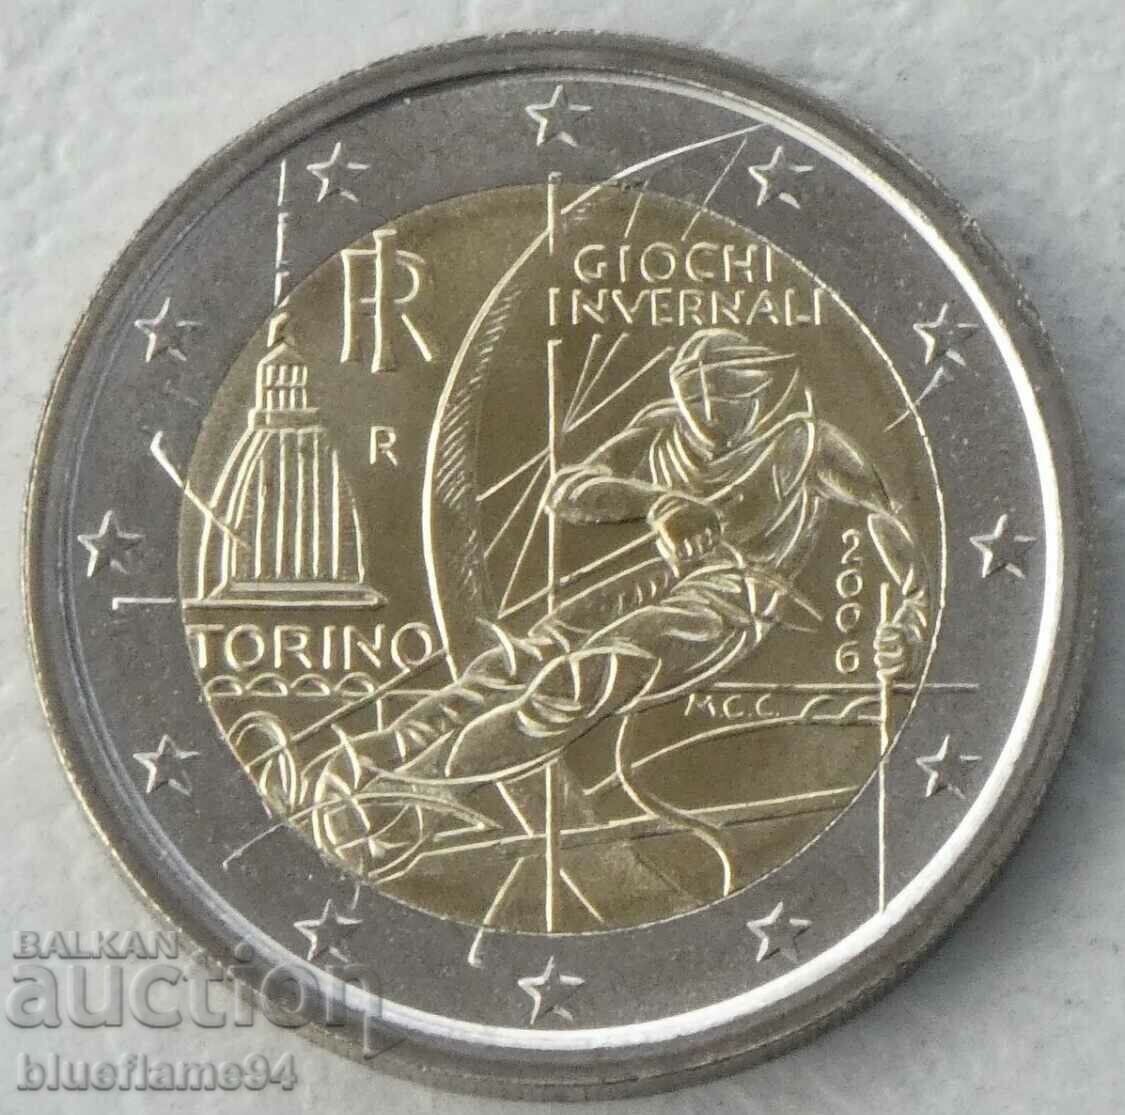 2 euro Italia 2006